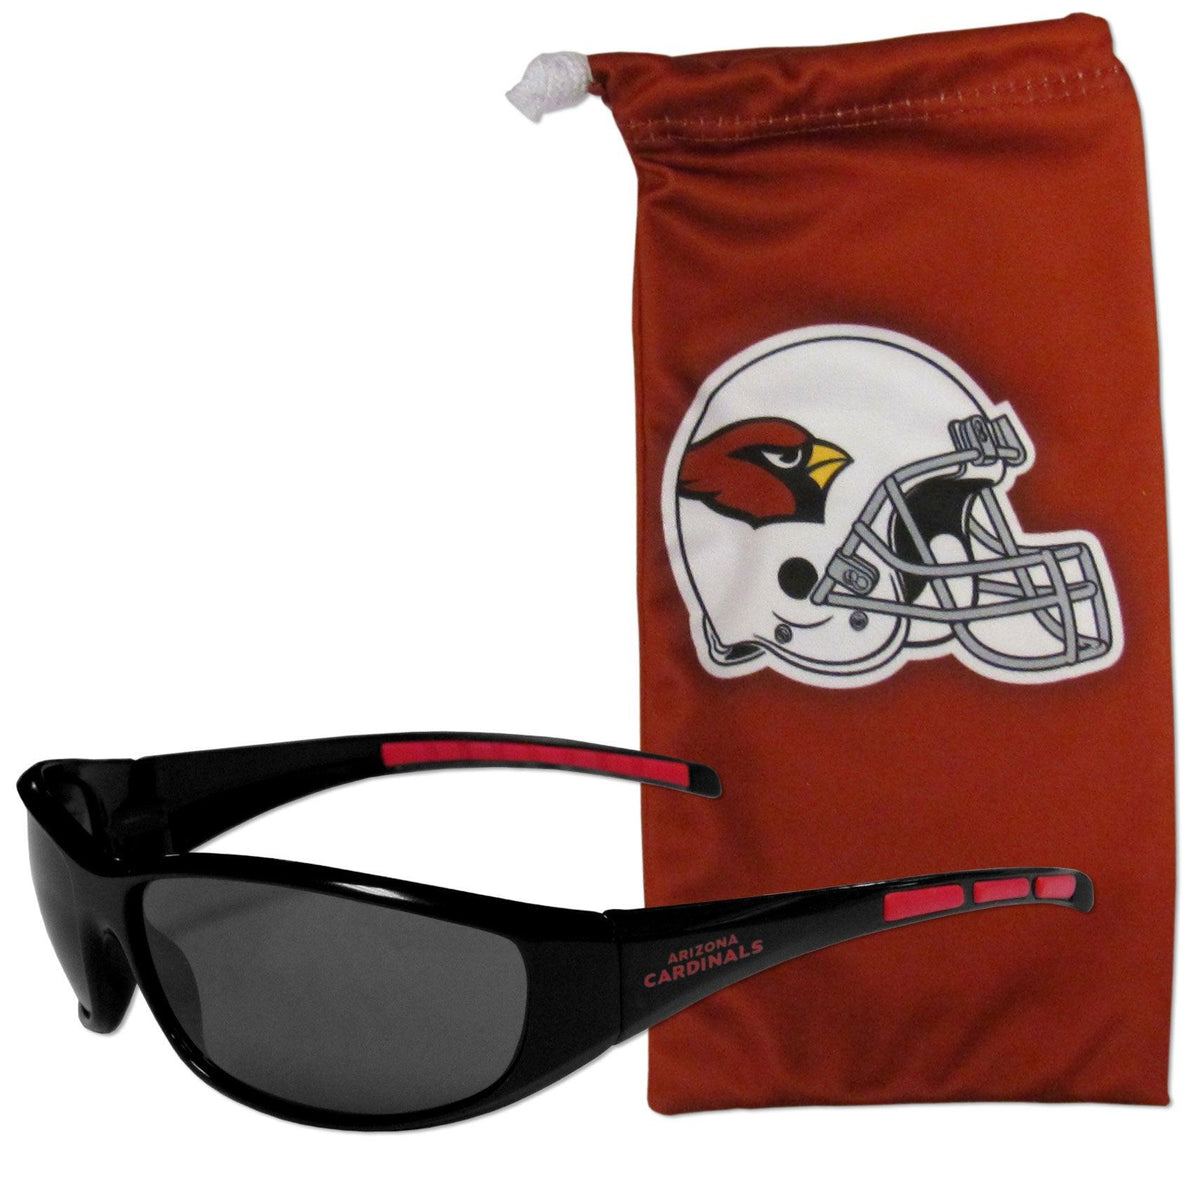 Arizona Cardinals Sunglass and Bag Set - Flyclothing LLC